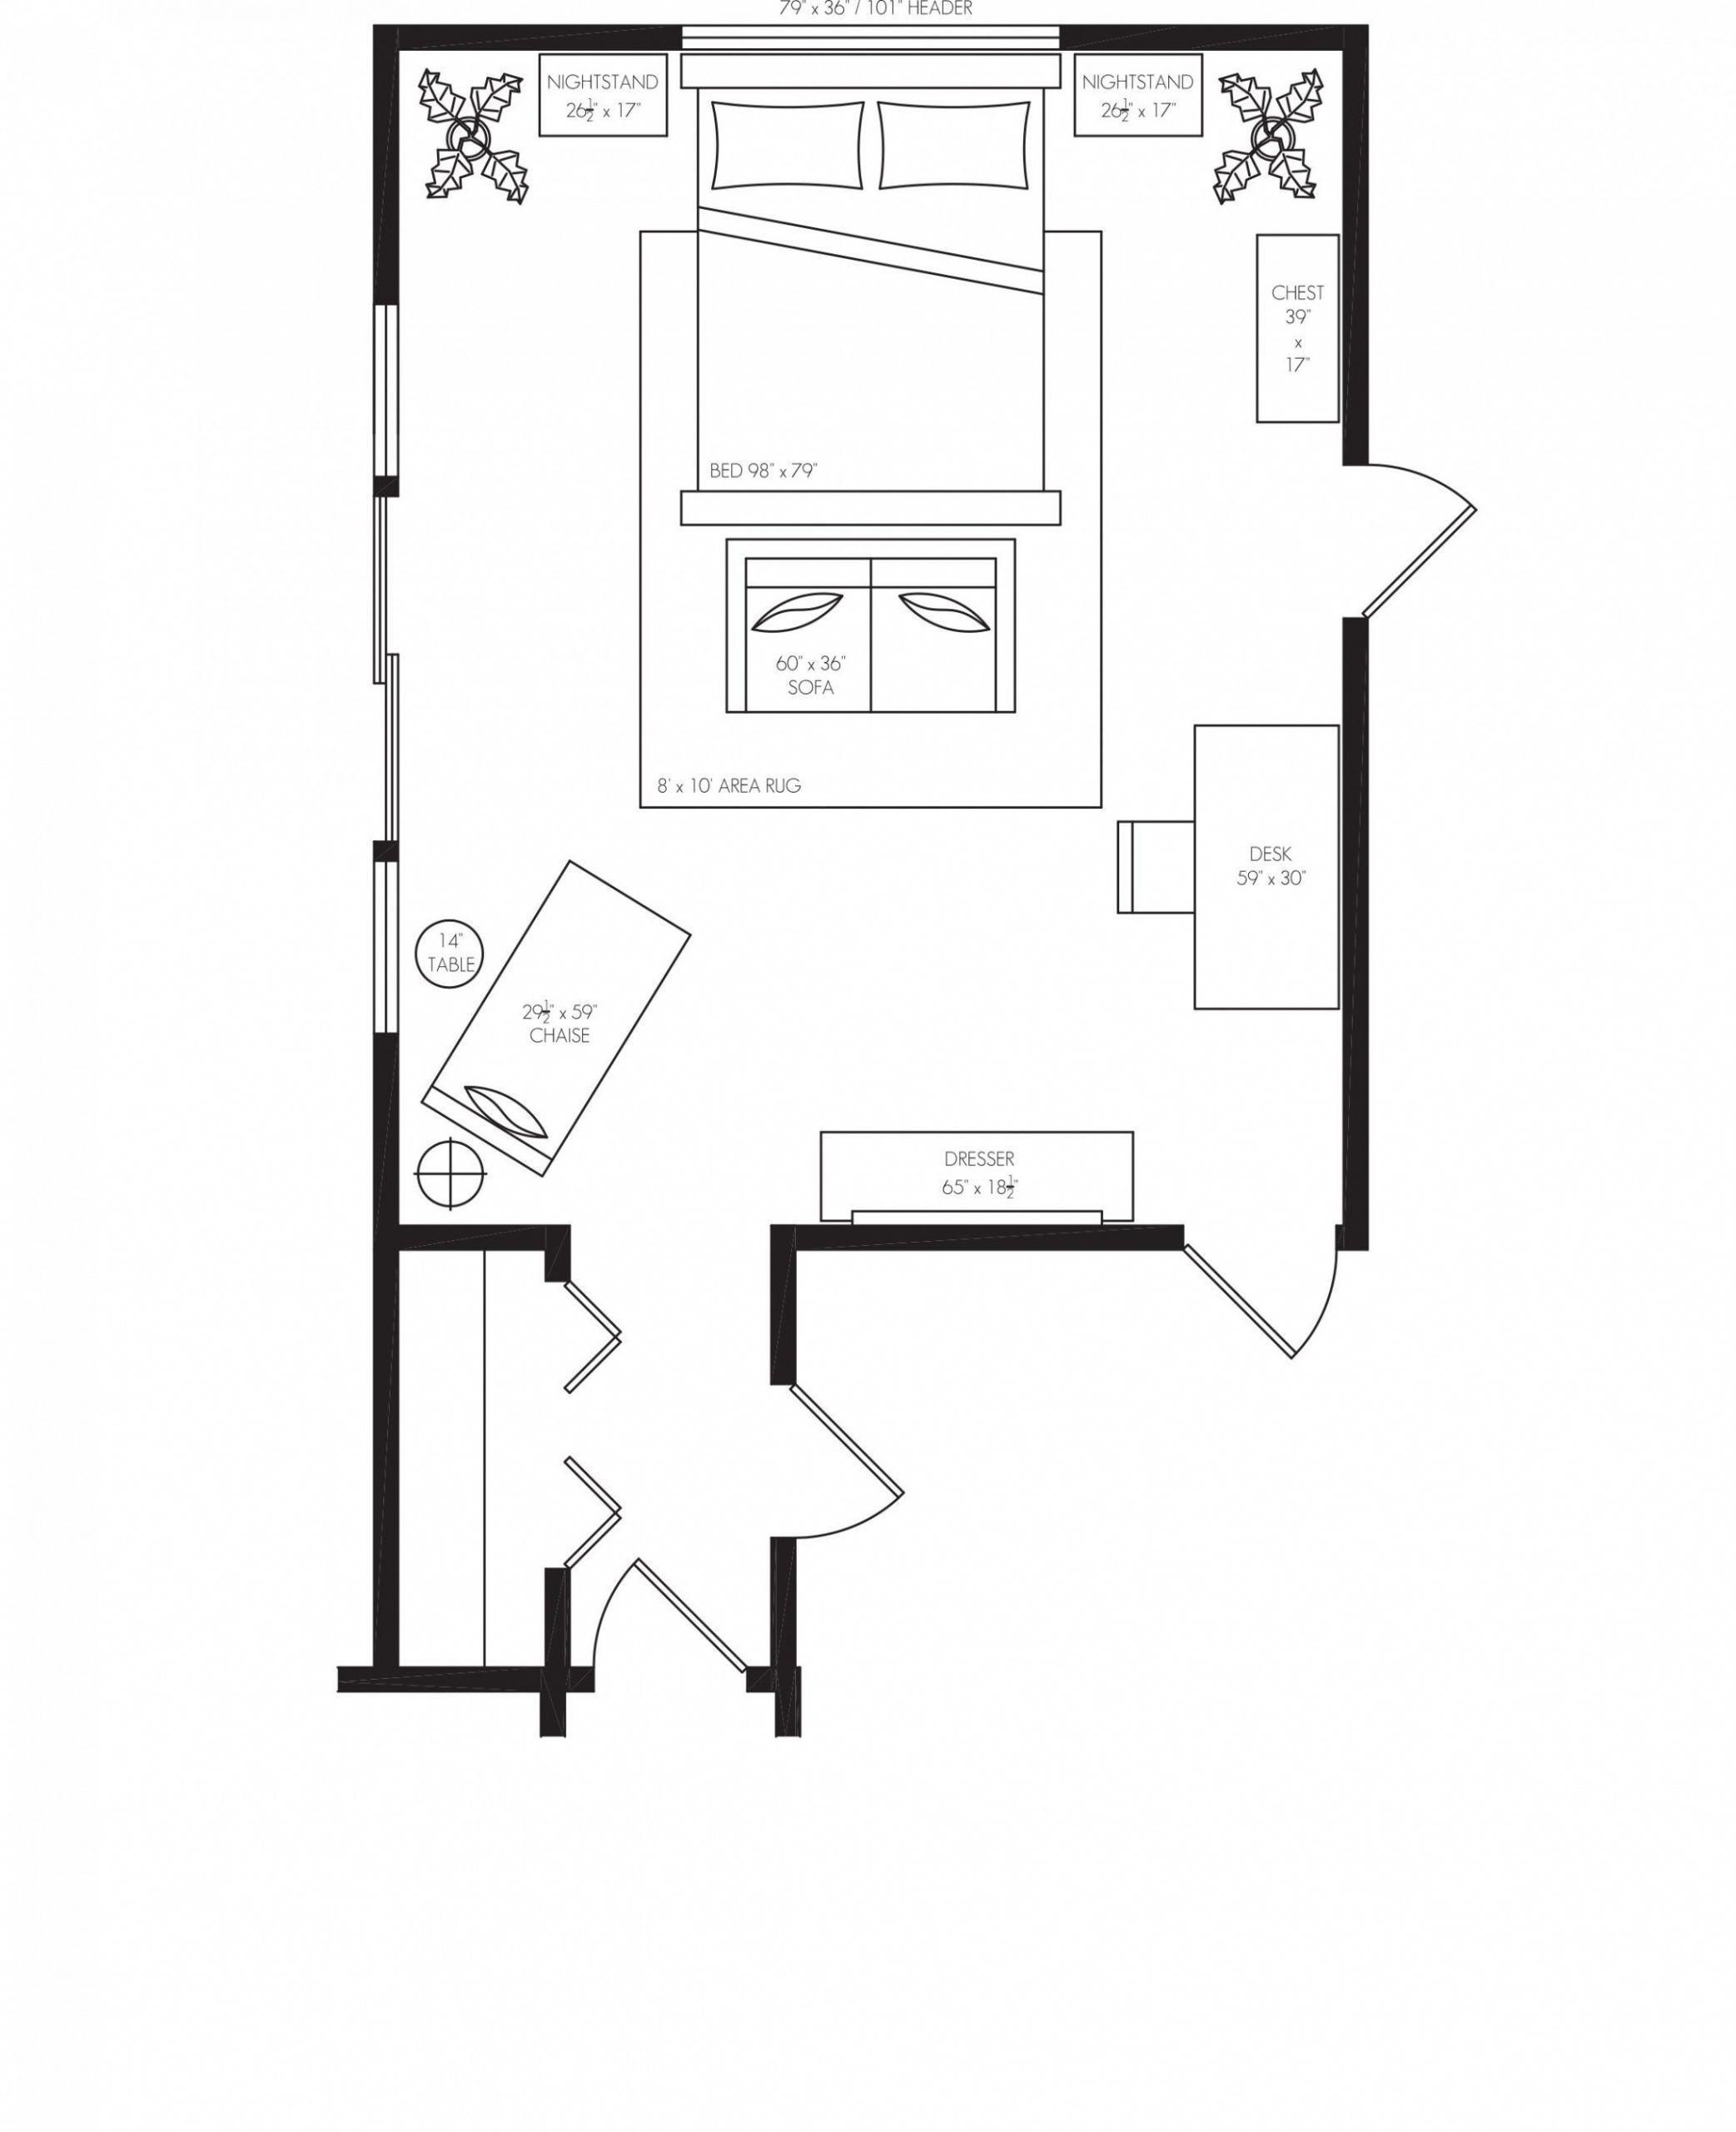 Bedroom Floor Plan With Furniture 